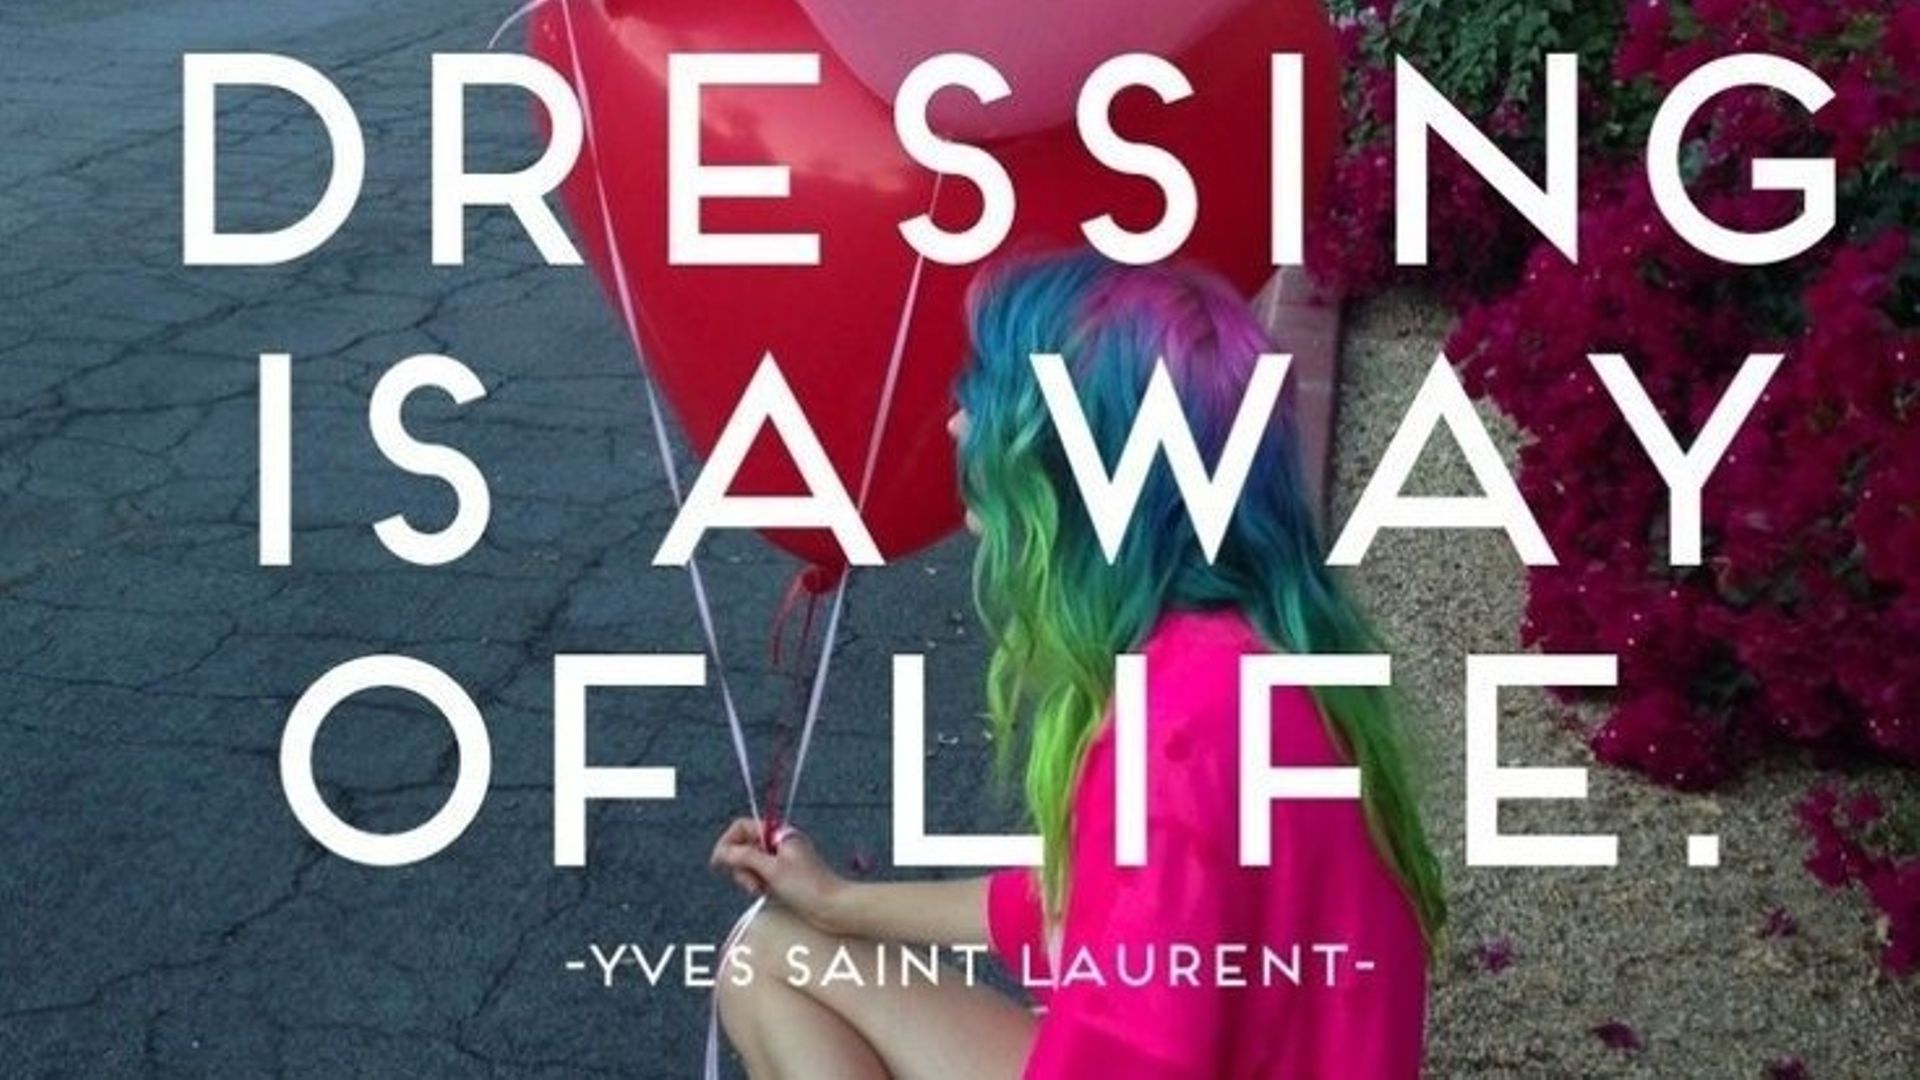 Un recueil de messages d'amour signés Yves Saint Laurent